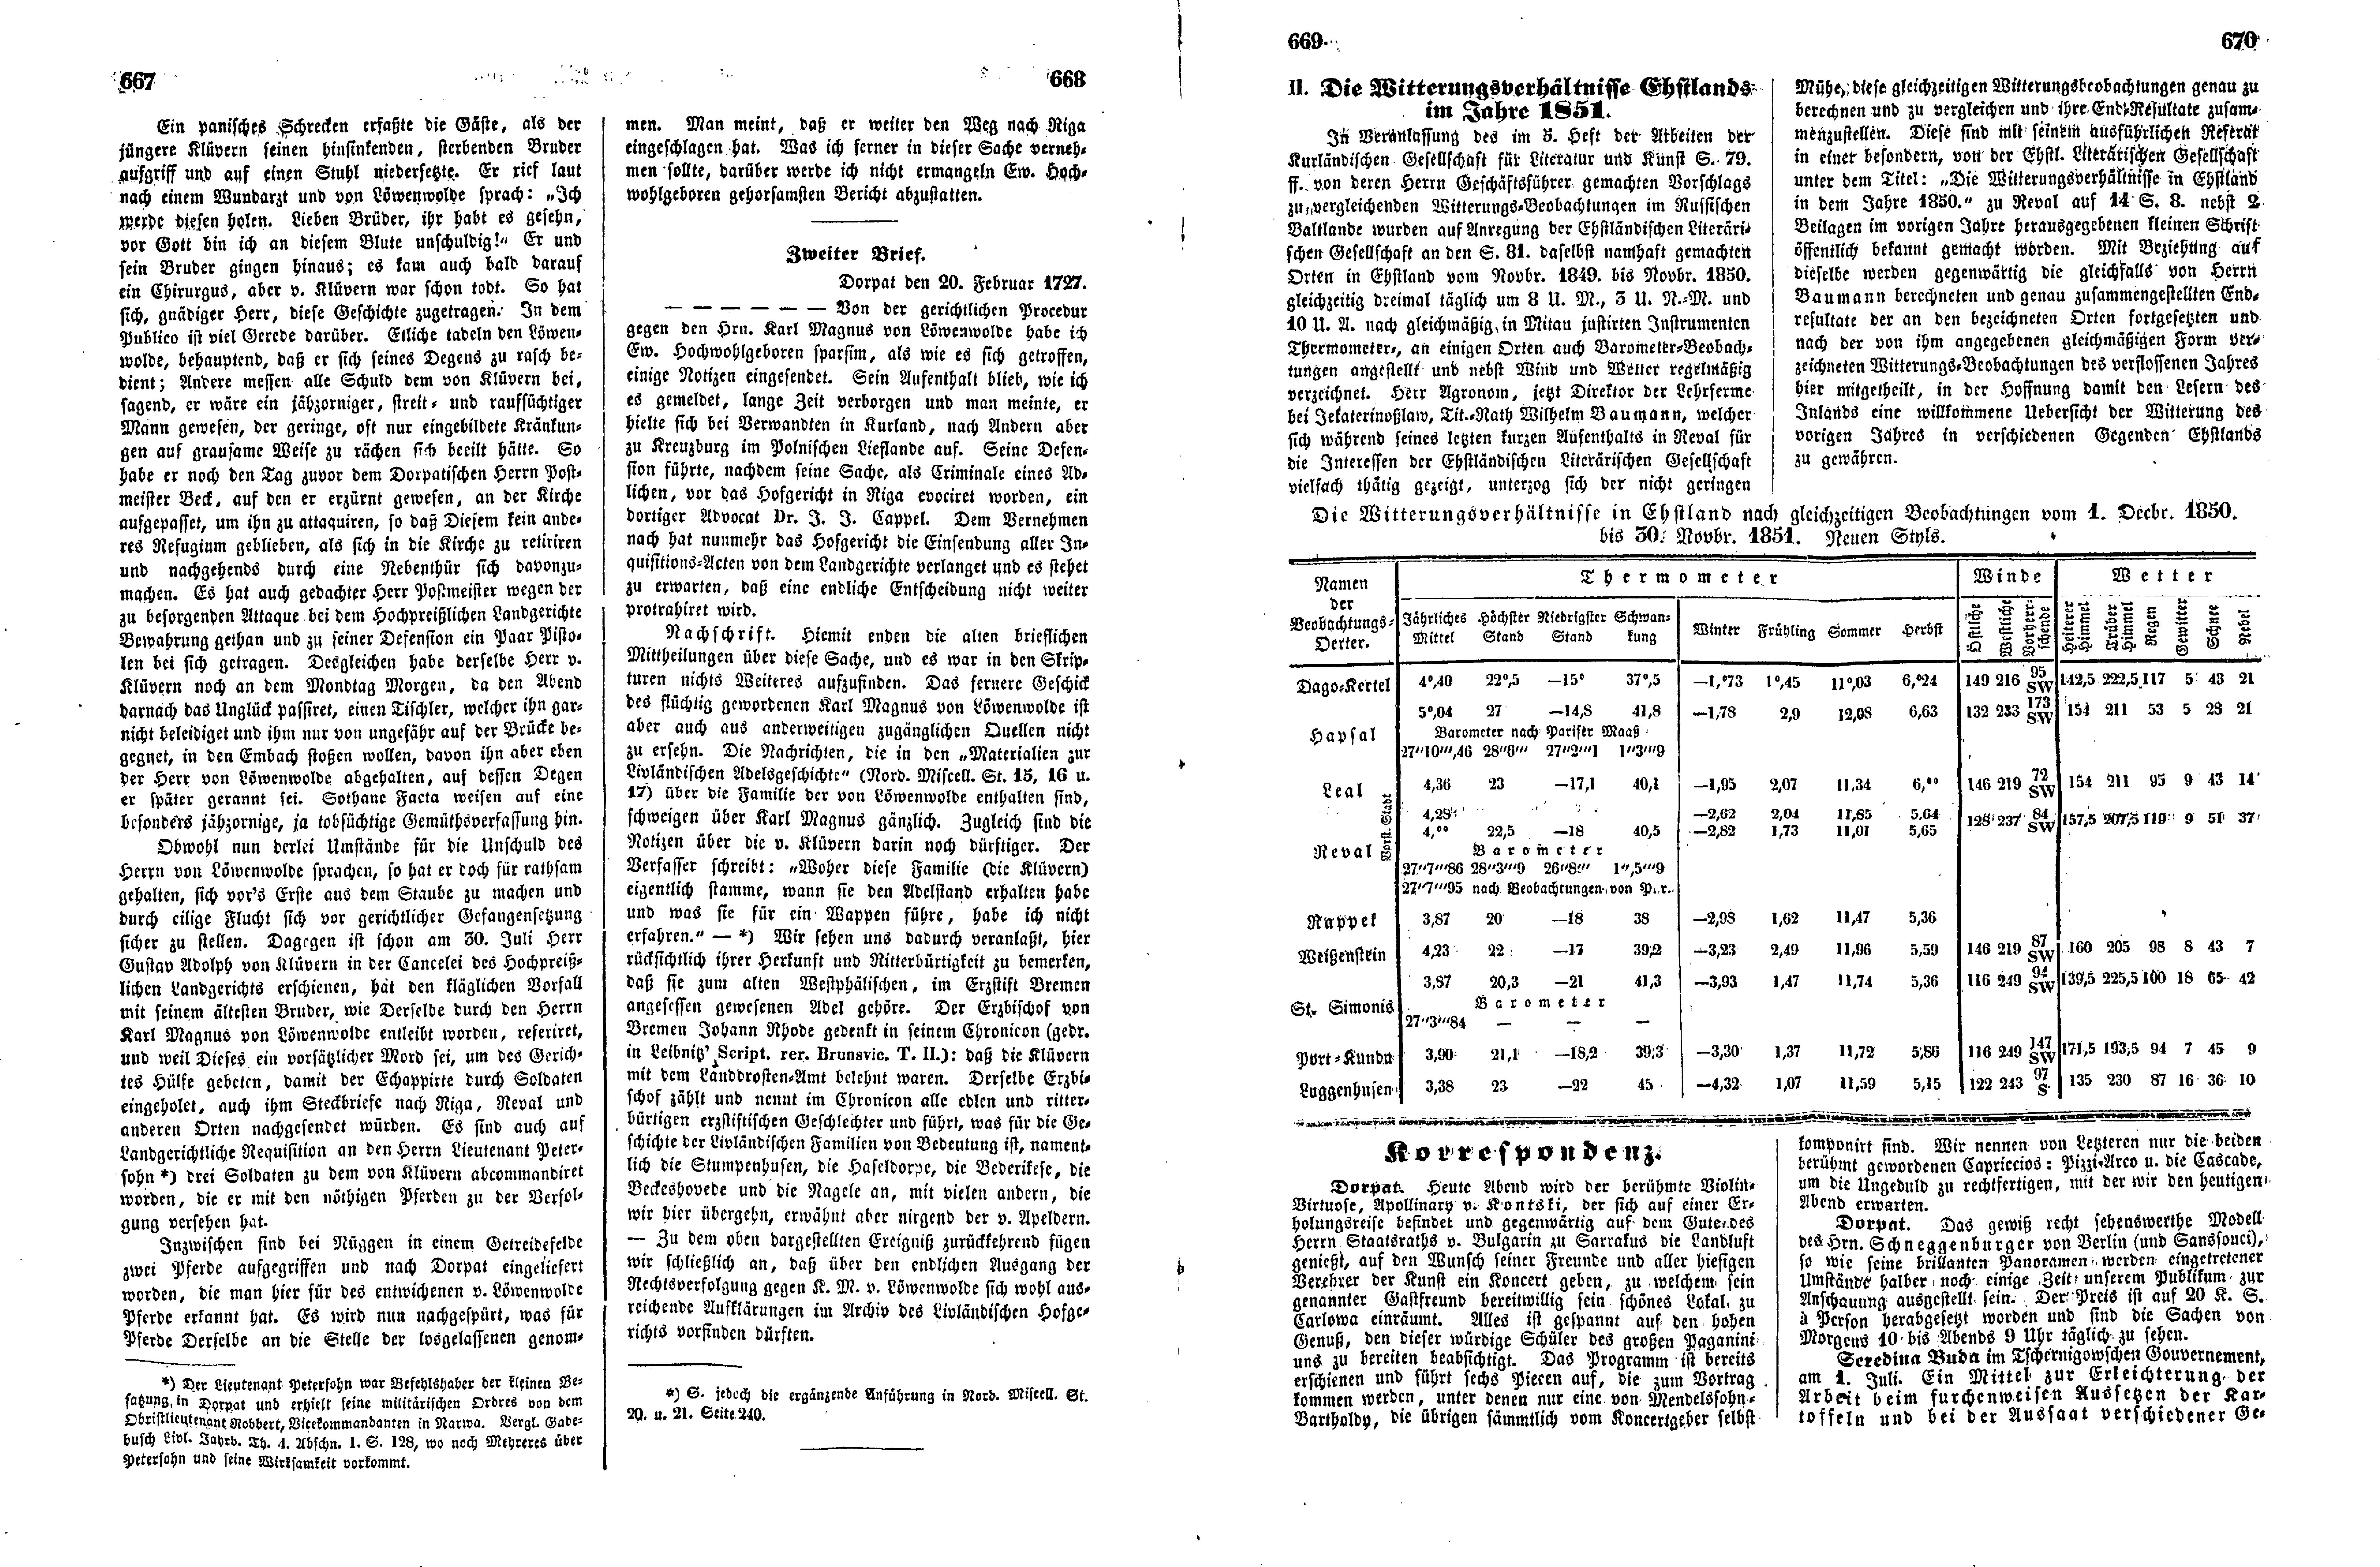 Das Inland [17] (1852) | 172. (667-670) Основной текст